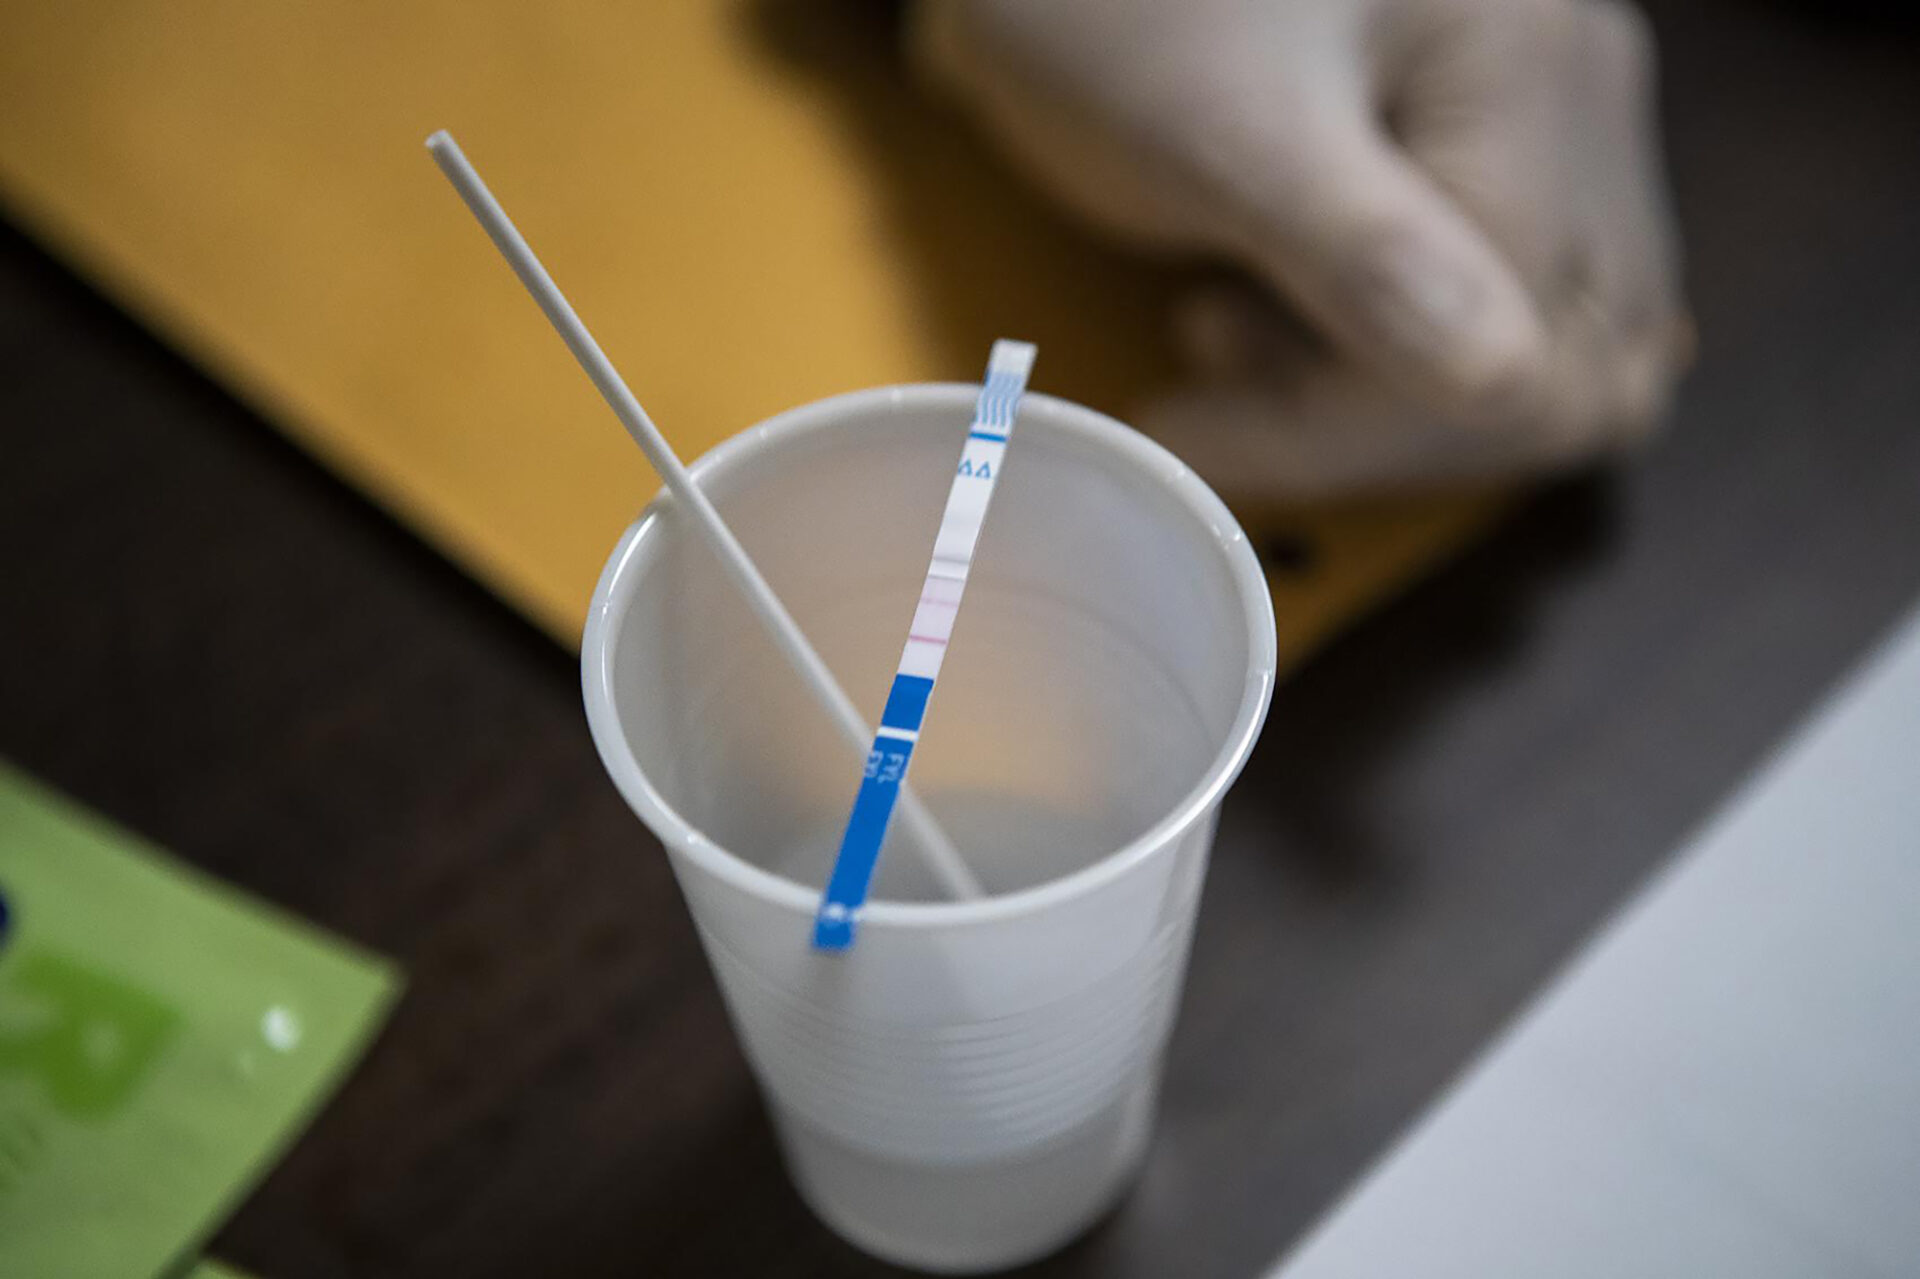 Drug Testing Strips Are Legalized In W.Va.